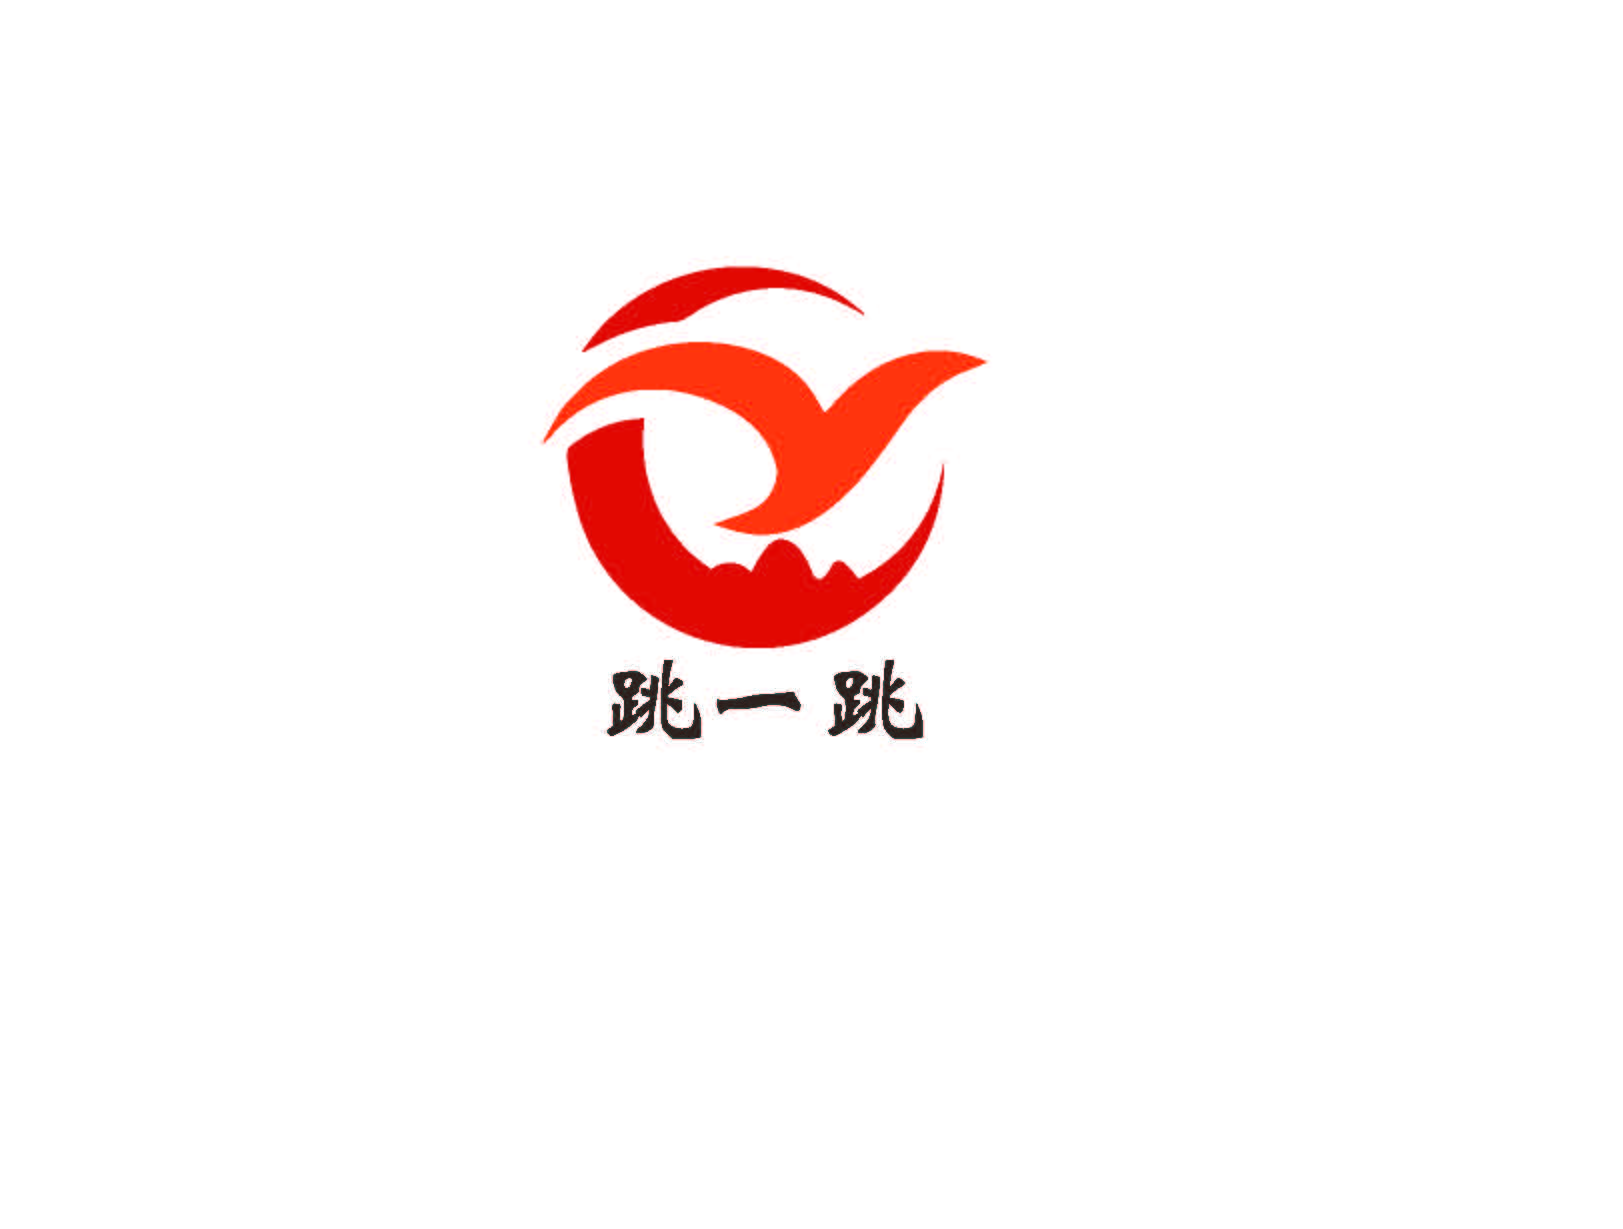 深圳跳一跳企业管理咨询有限公司logo